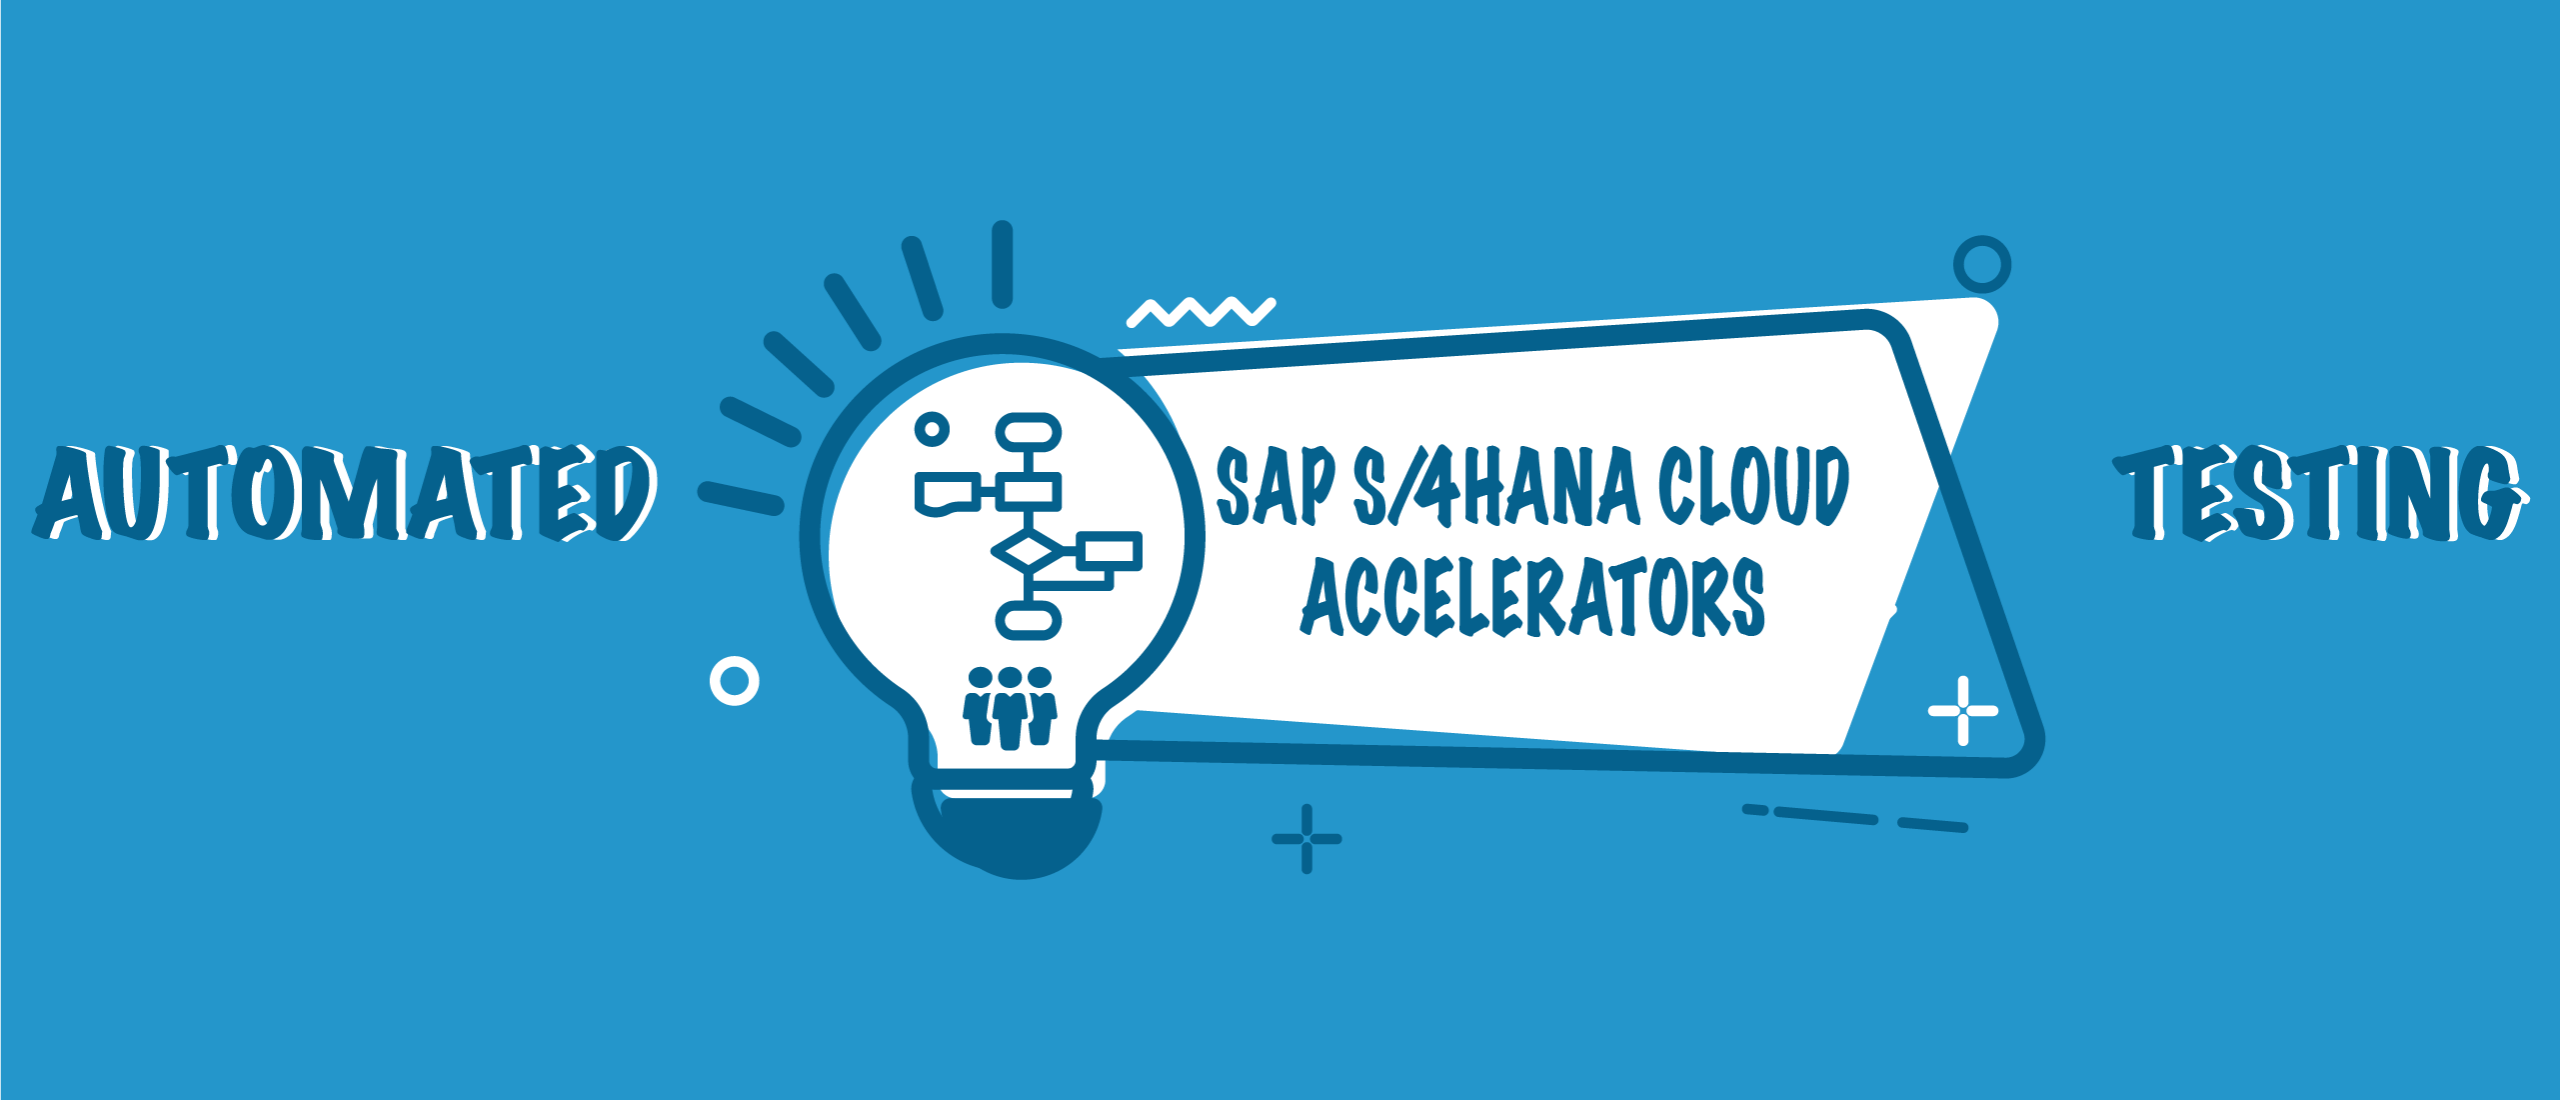 Automated Testing SAP S/4HANA Cloud Explained